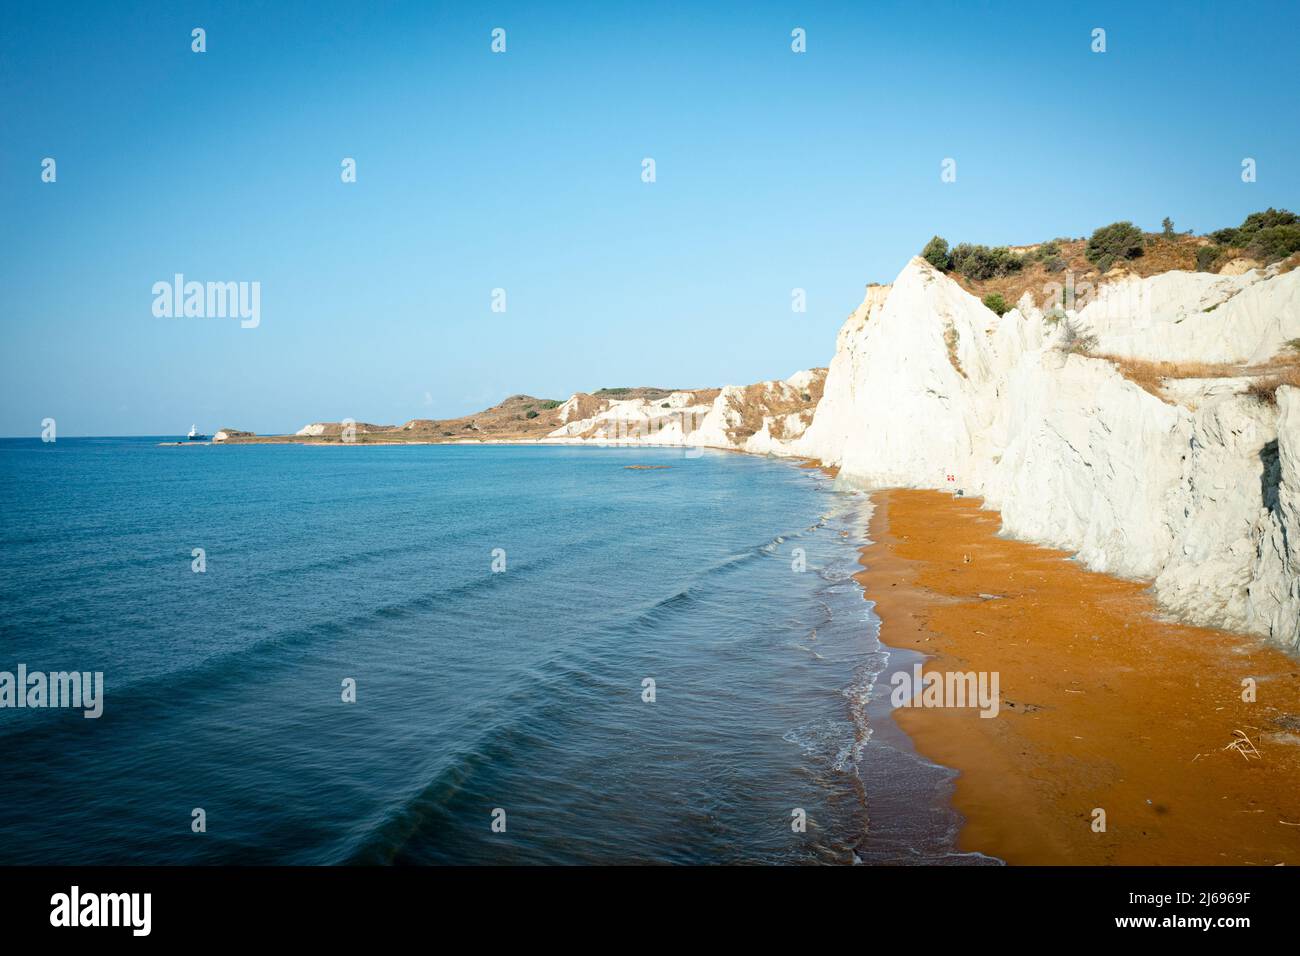 Alba sulla sabbia dorata della spiaggia di Xi circondata da maestose scogliere calcaree, Cefalonia, Isole IONIE, Isole Greche, Grecia, Europa Foto Stock